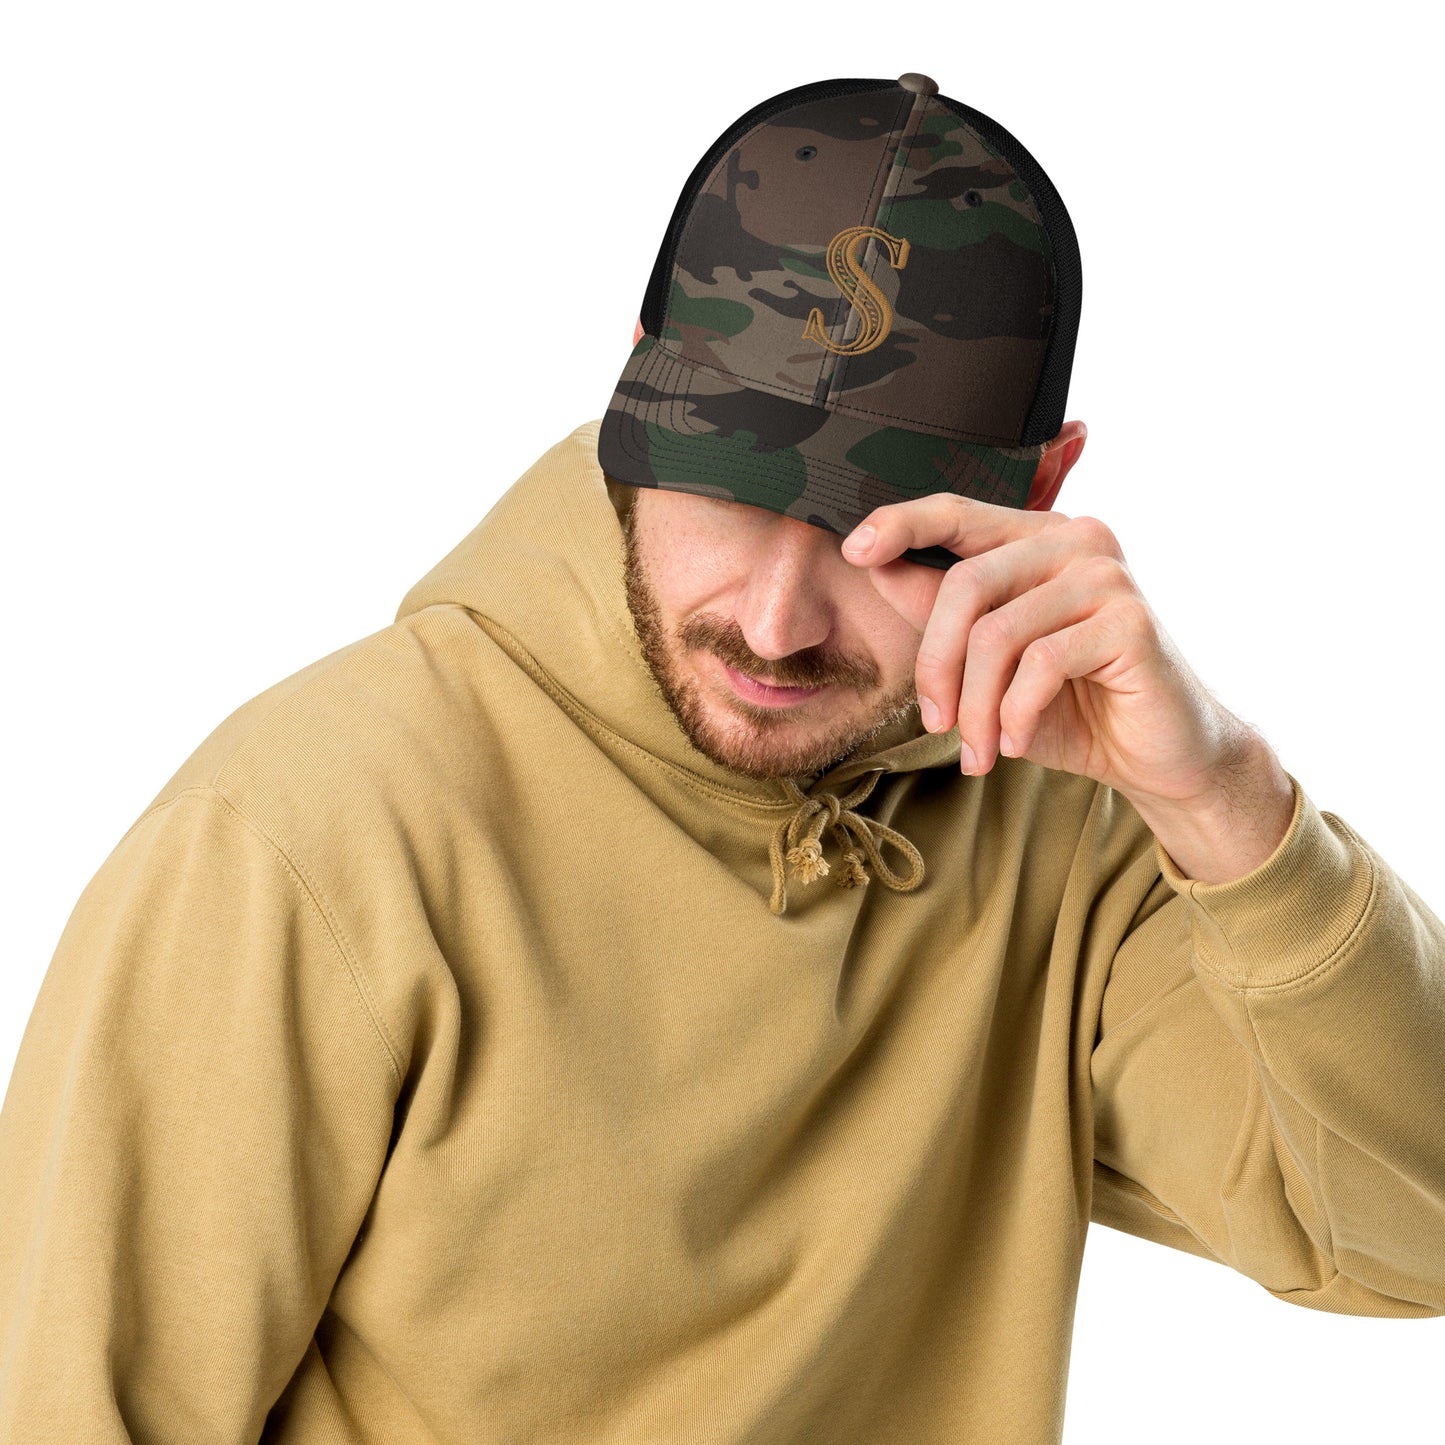 Camouflage S trucker hat